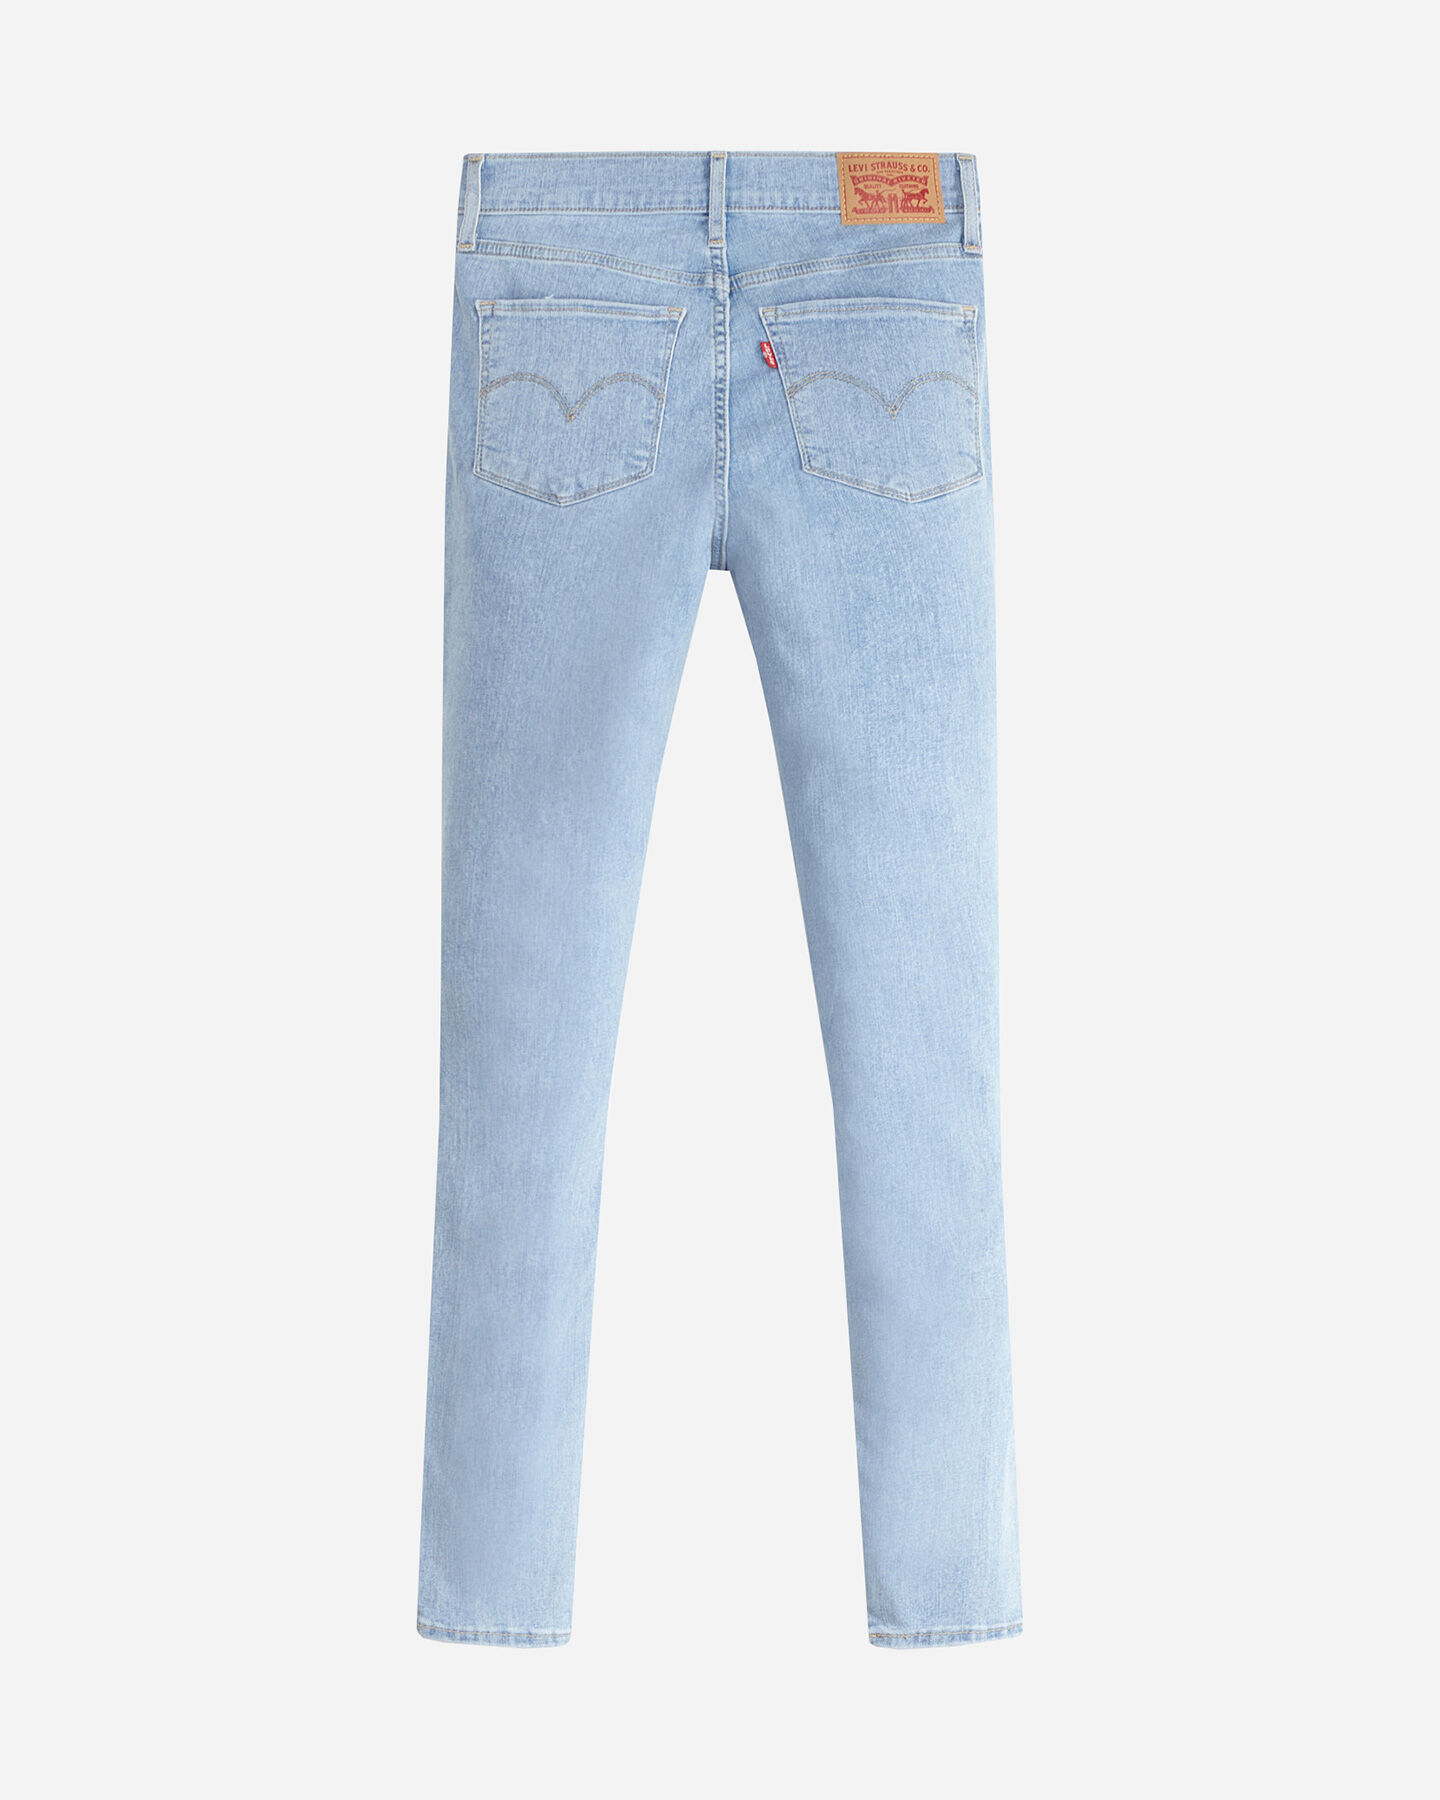  Jeans LEVI'S 720 HIGH RISE SUPER SKINNY L30 DENIM W S4104865|0196|29 scatto 5